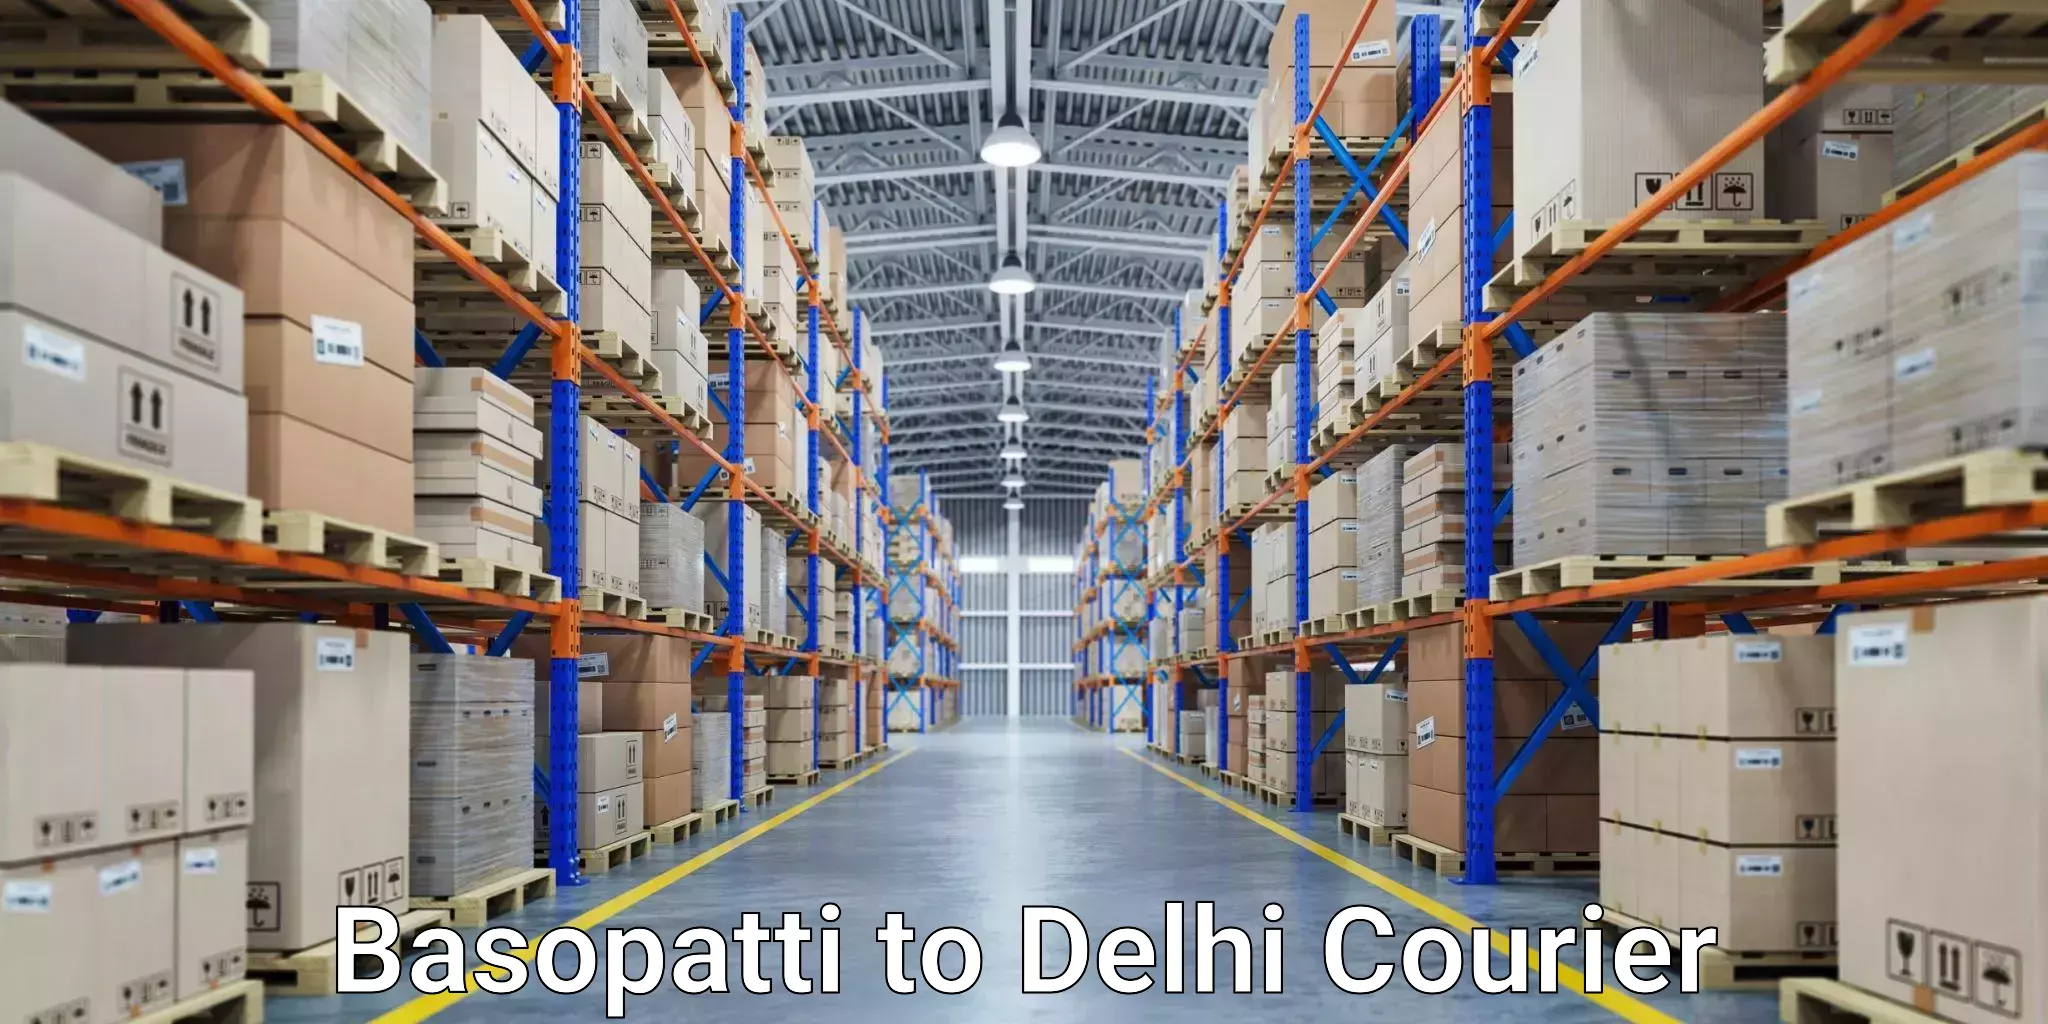 User-friendly delivery service Basopatti to University of Delhi